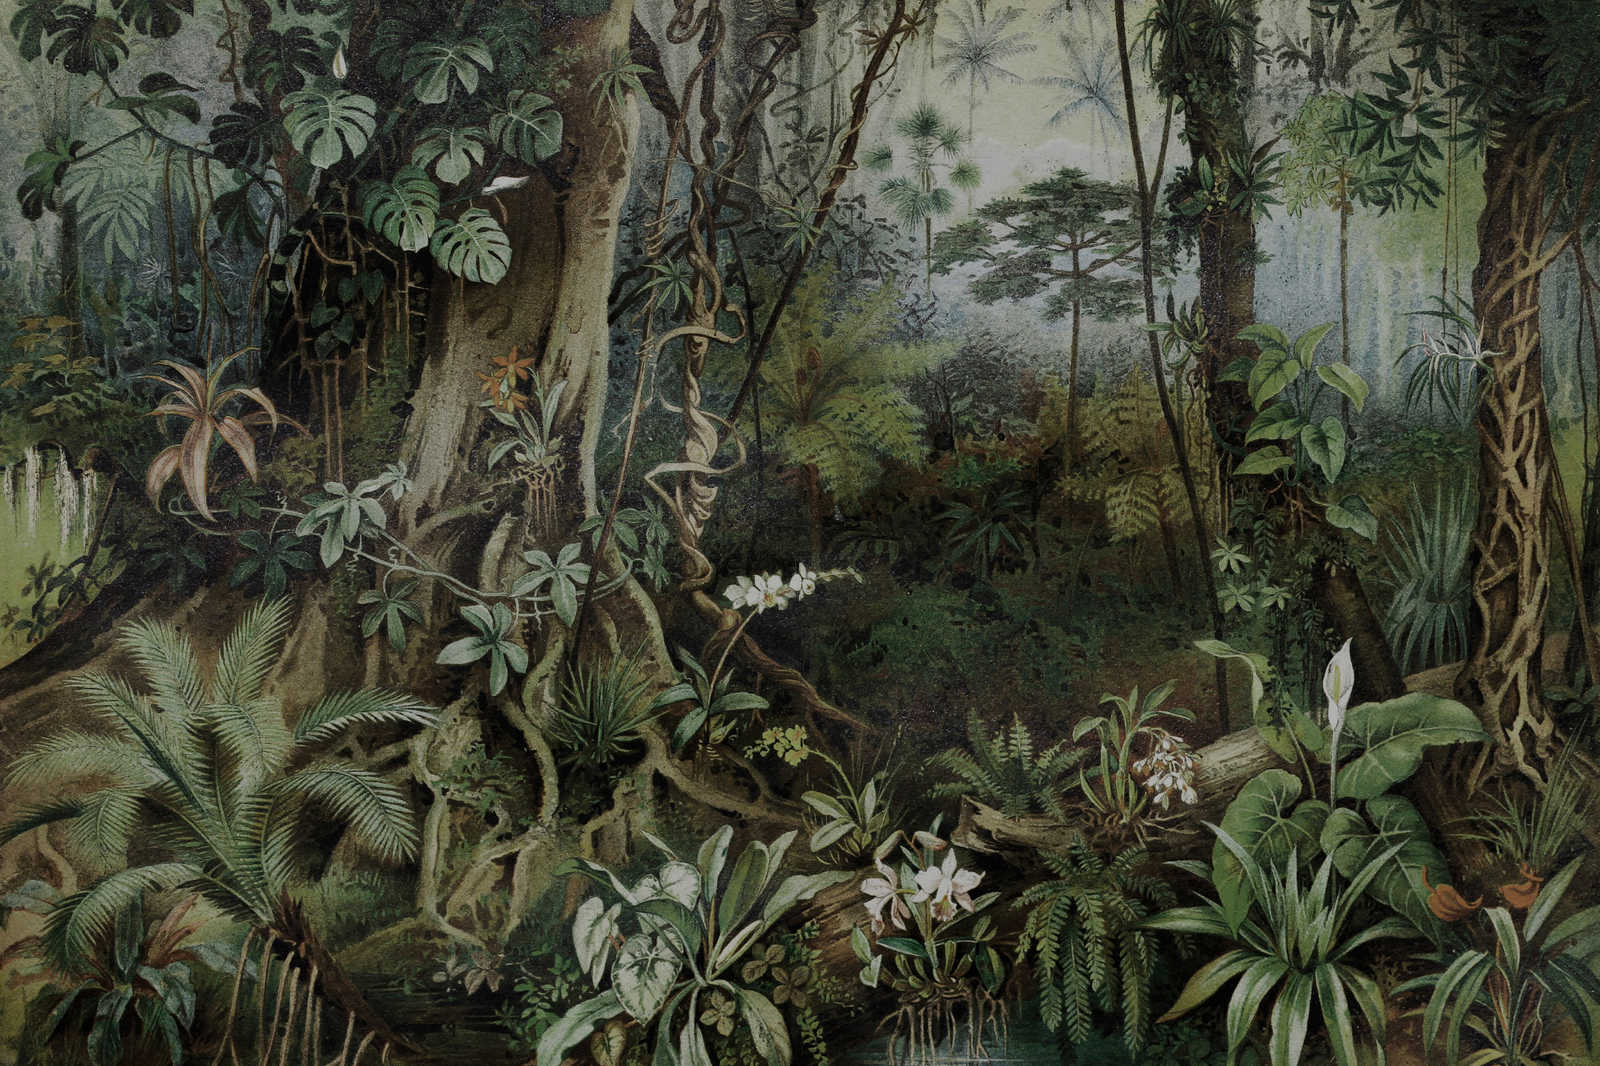             Jungle toile style dessin | walls by patel - 0,90 m x 0,60 m
        